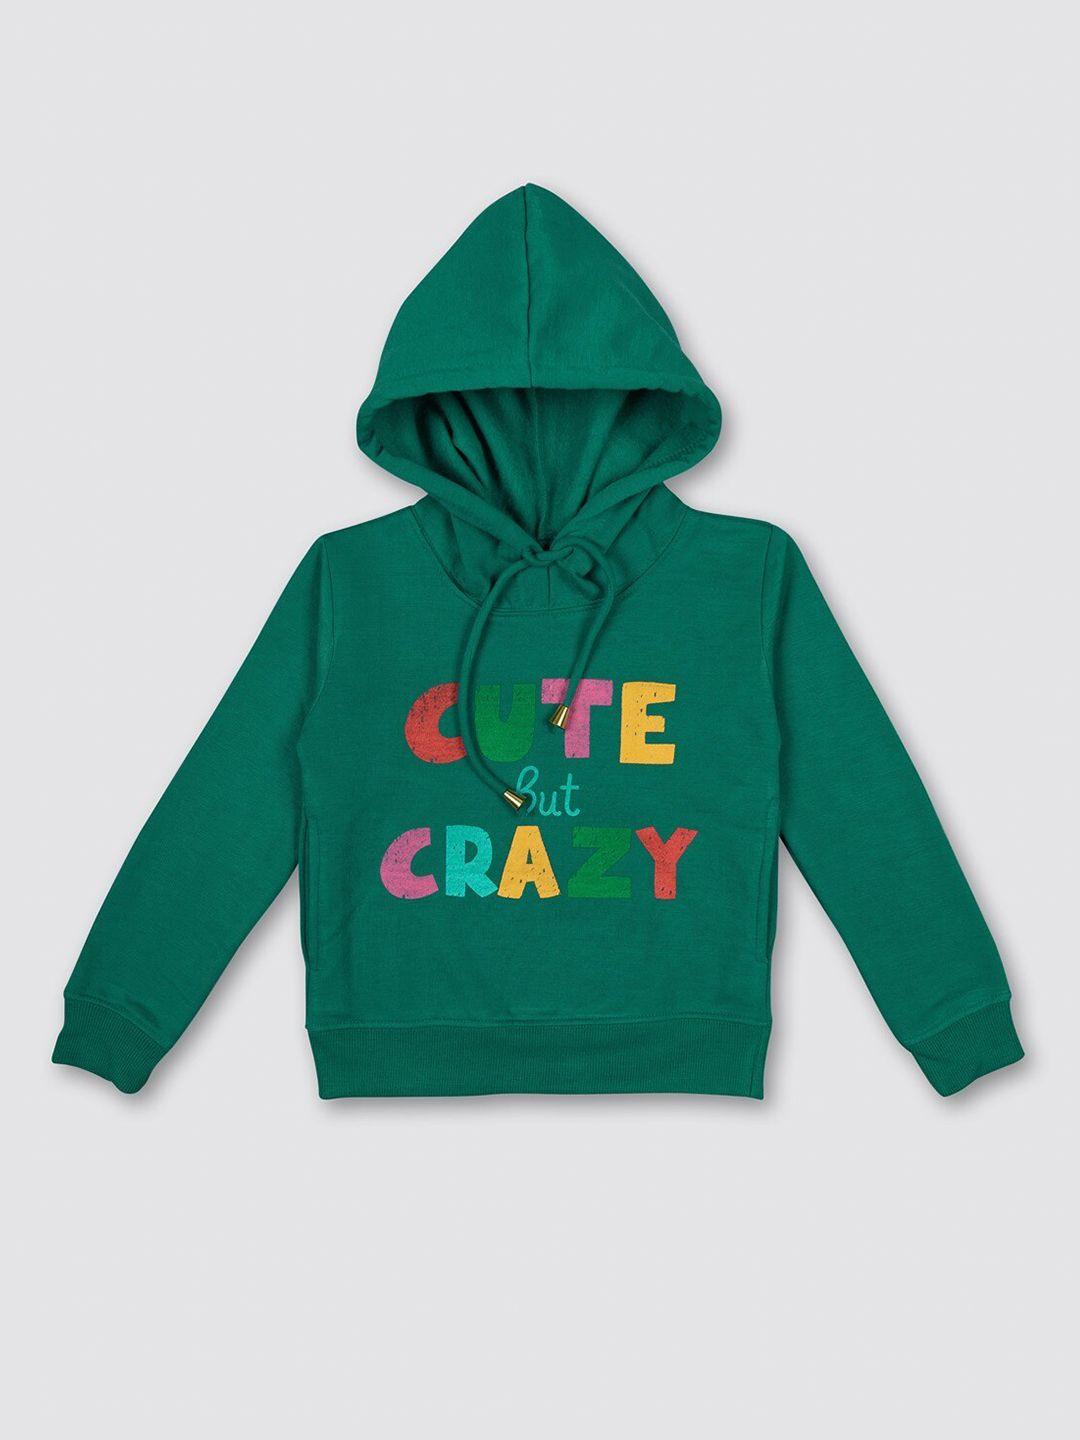 myy-kids-green-printed-hooded-fleece-sweatshirt